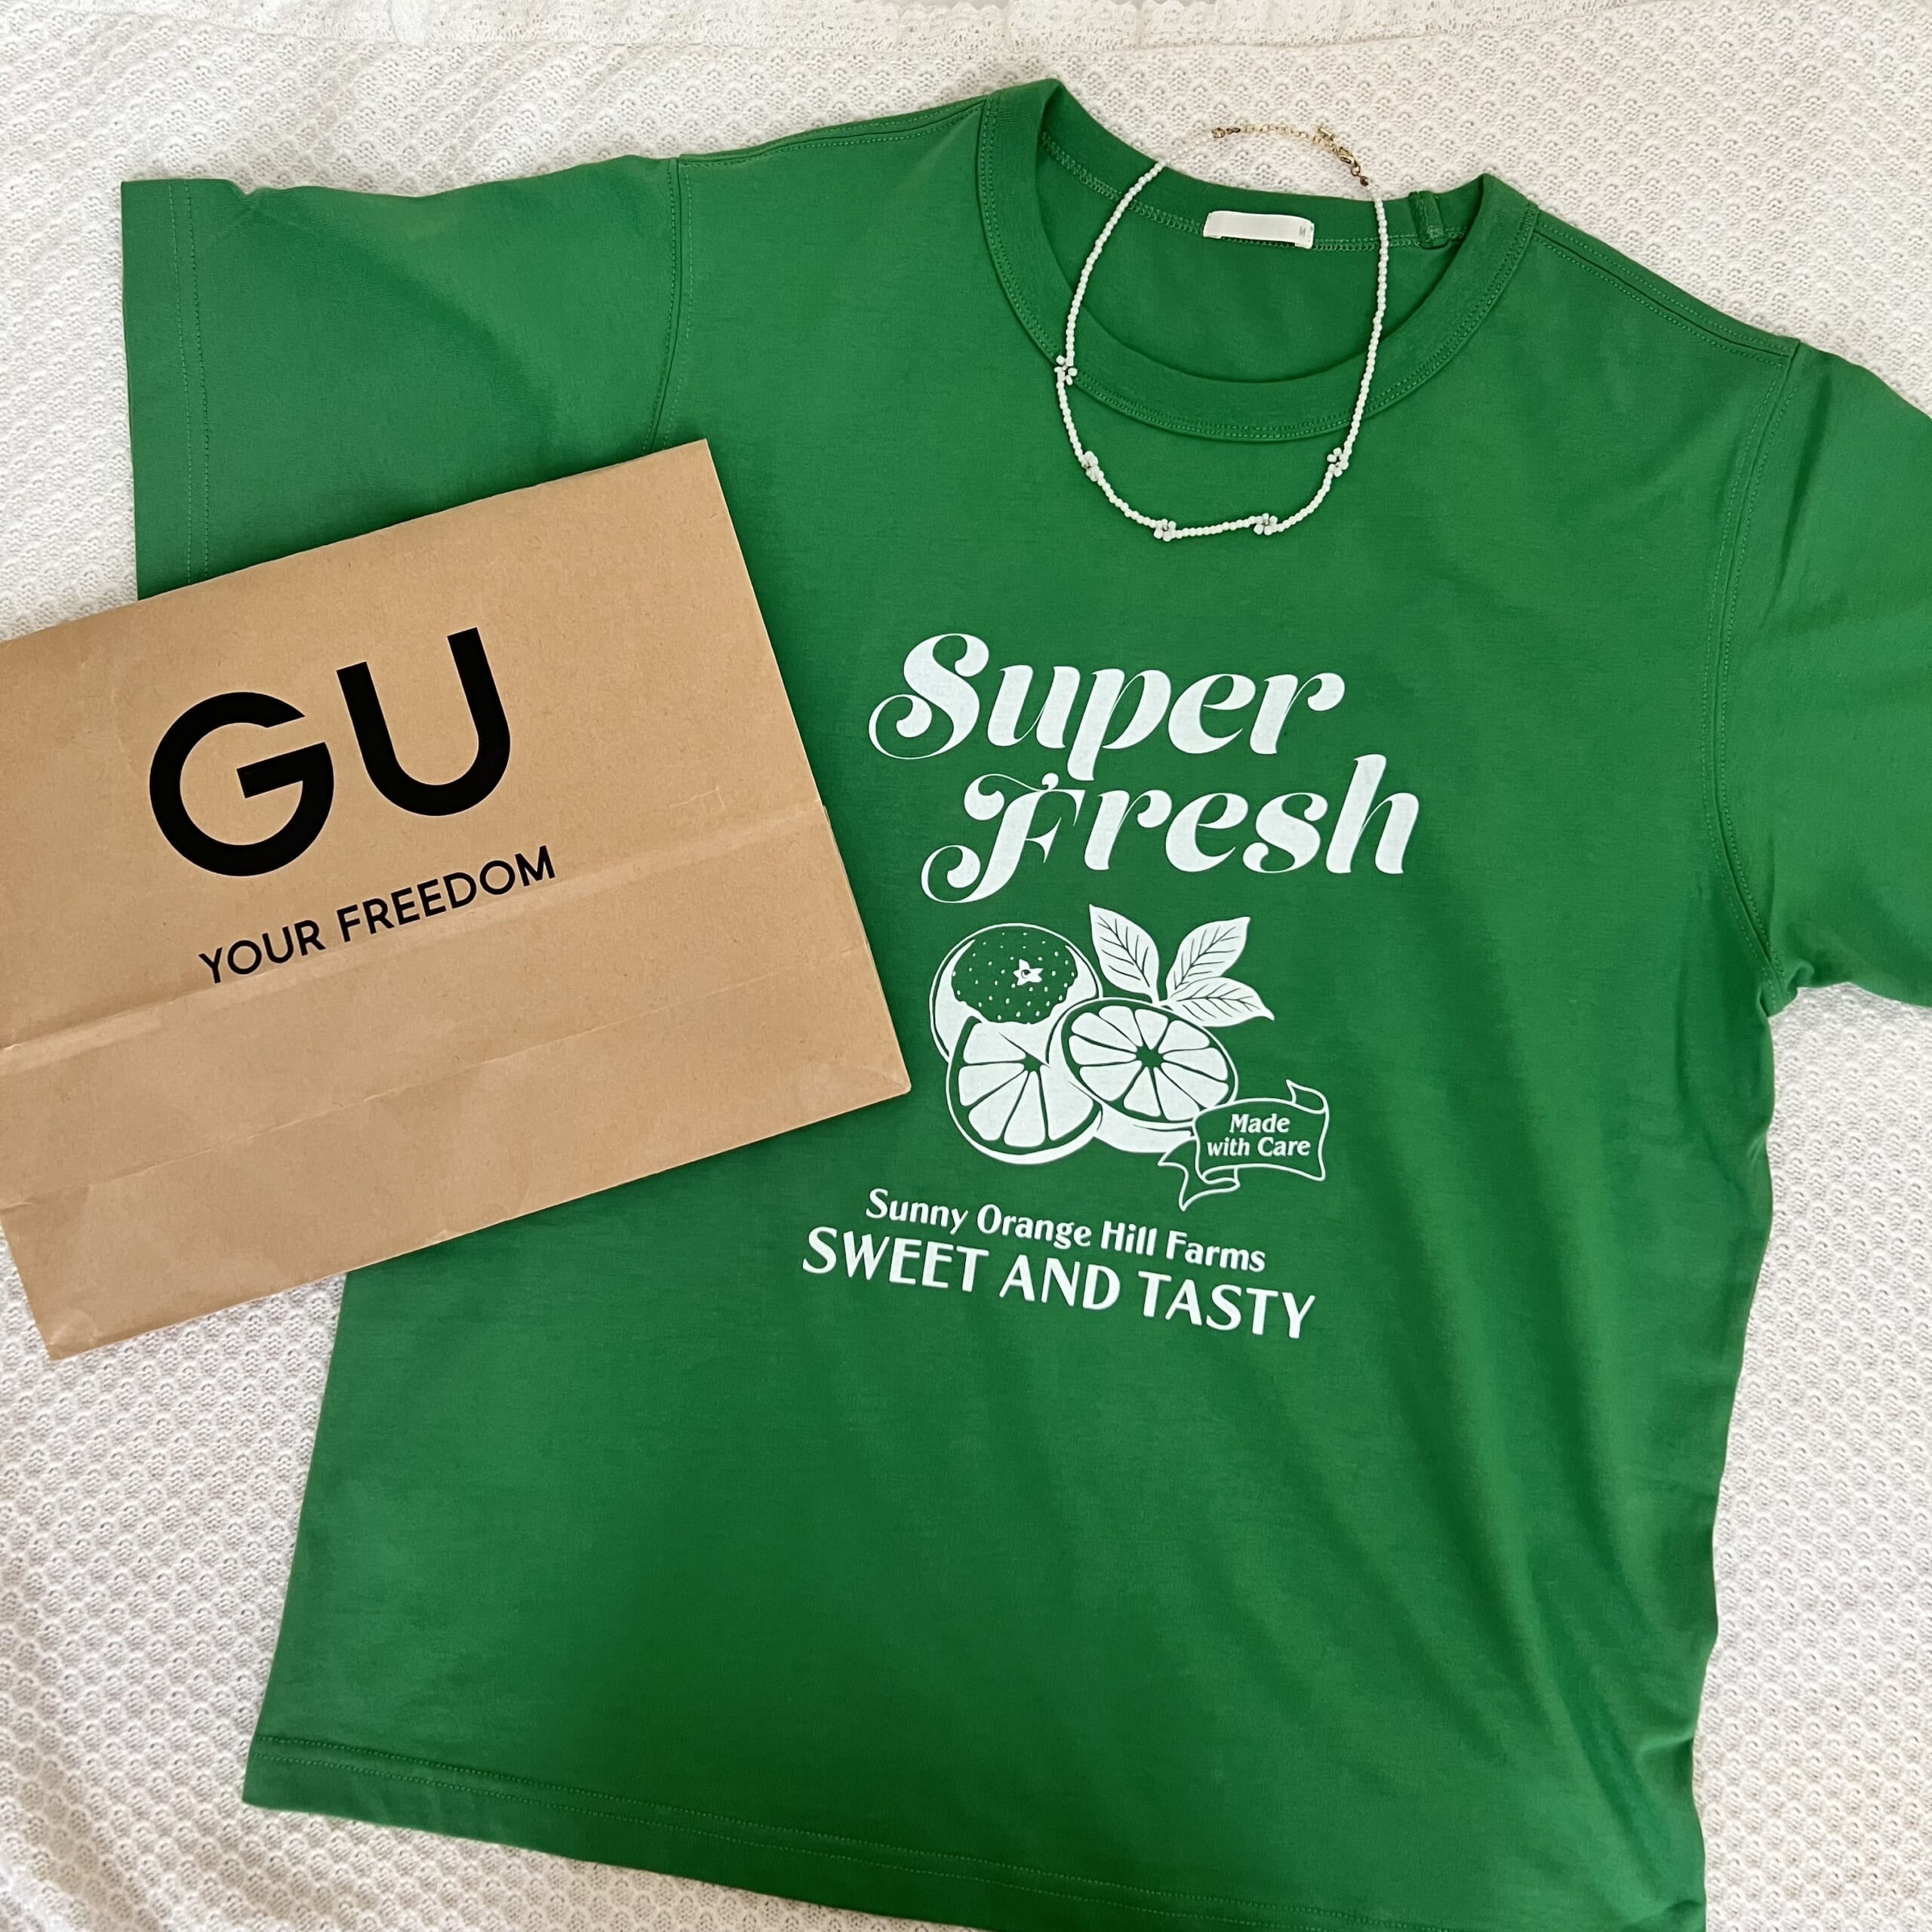 「トレンド感のあるコーディネートになる」【GU】の”グリーンTシャツ”が可愛い